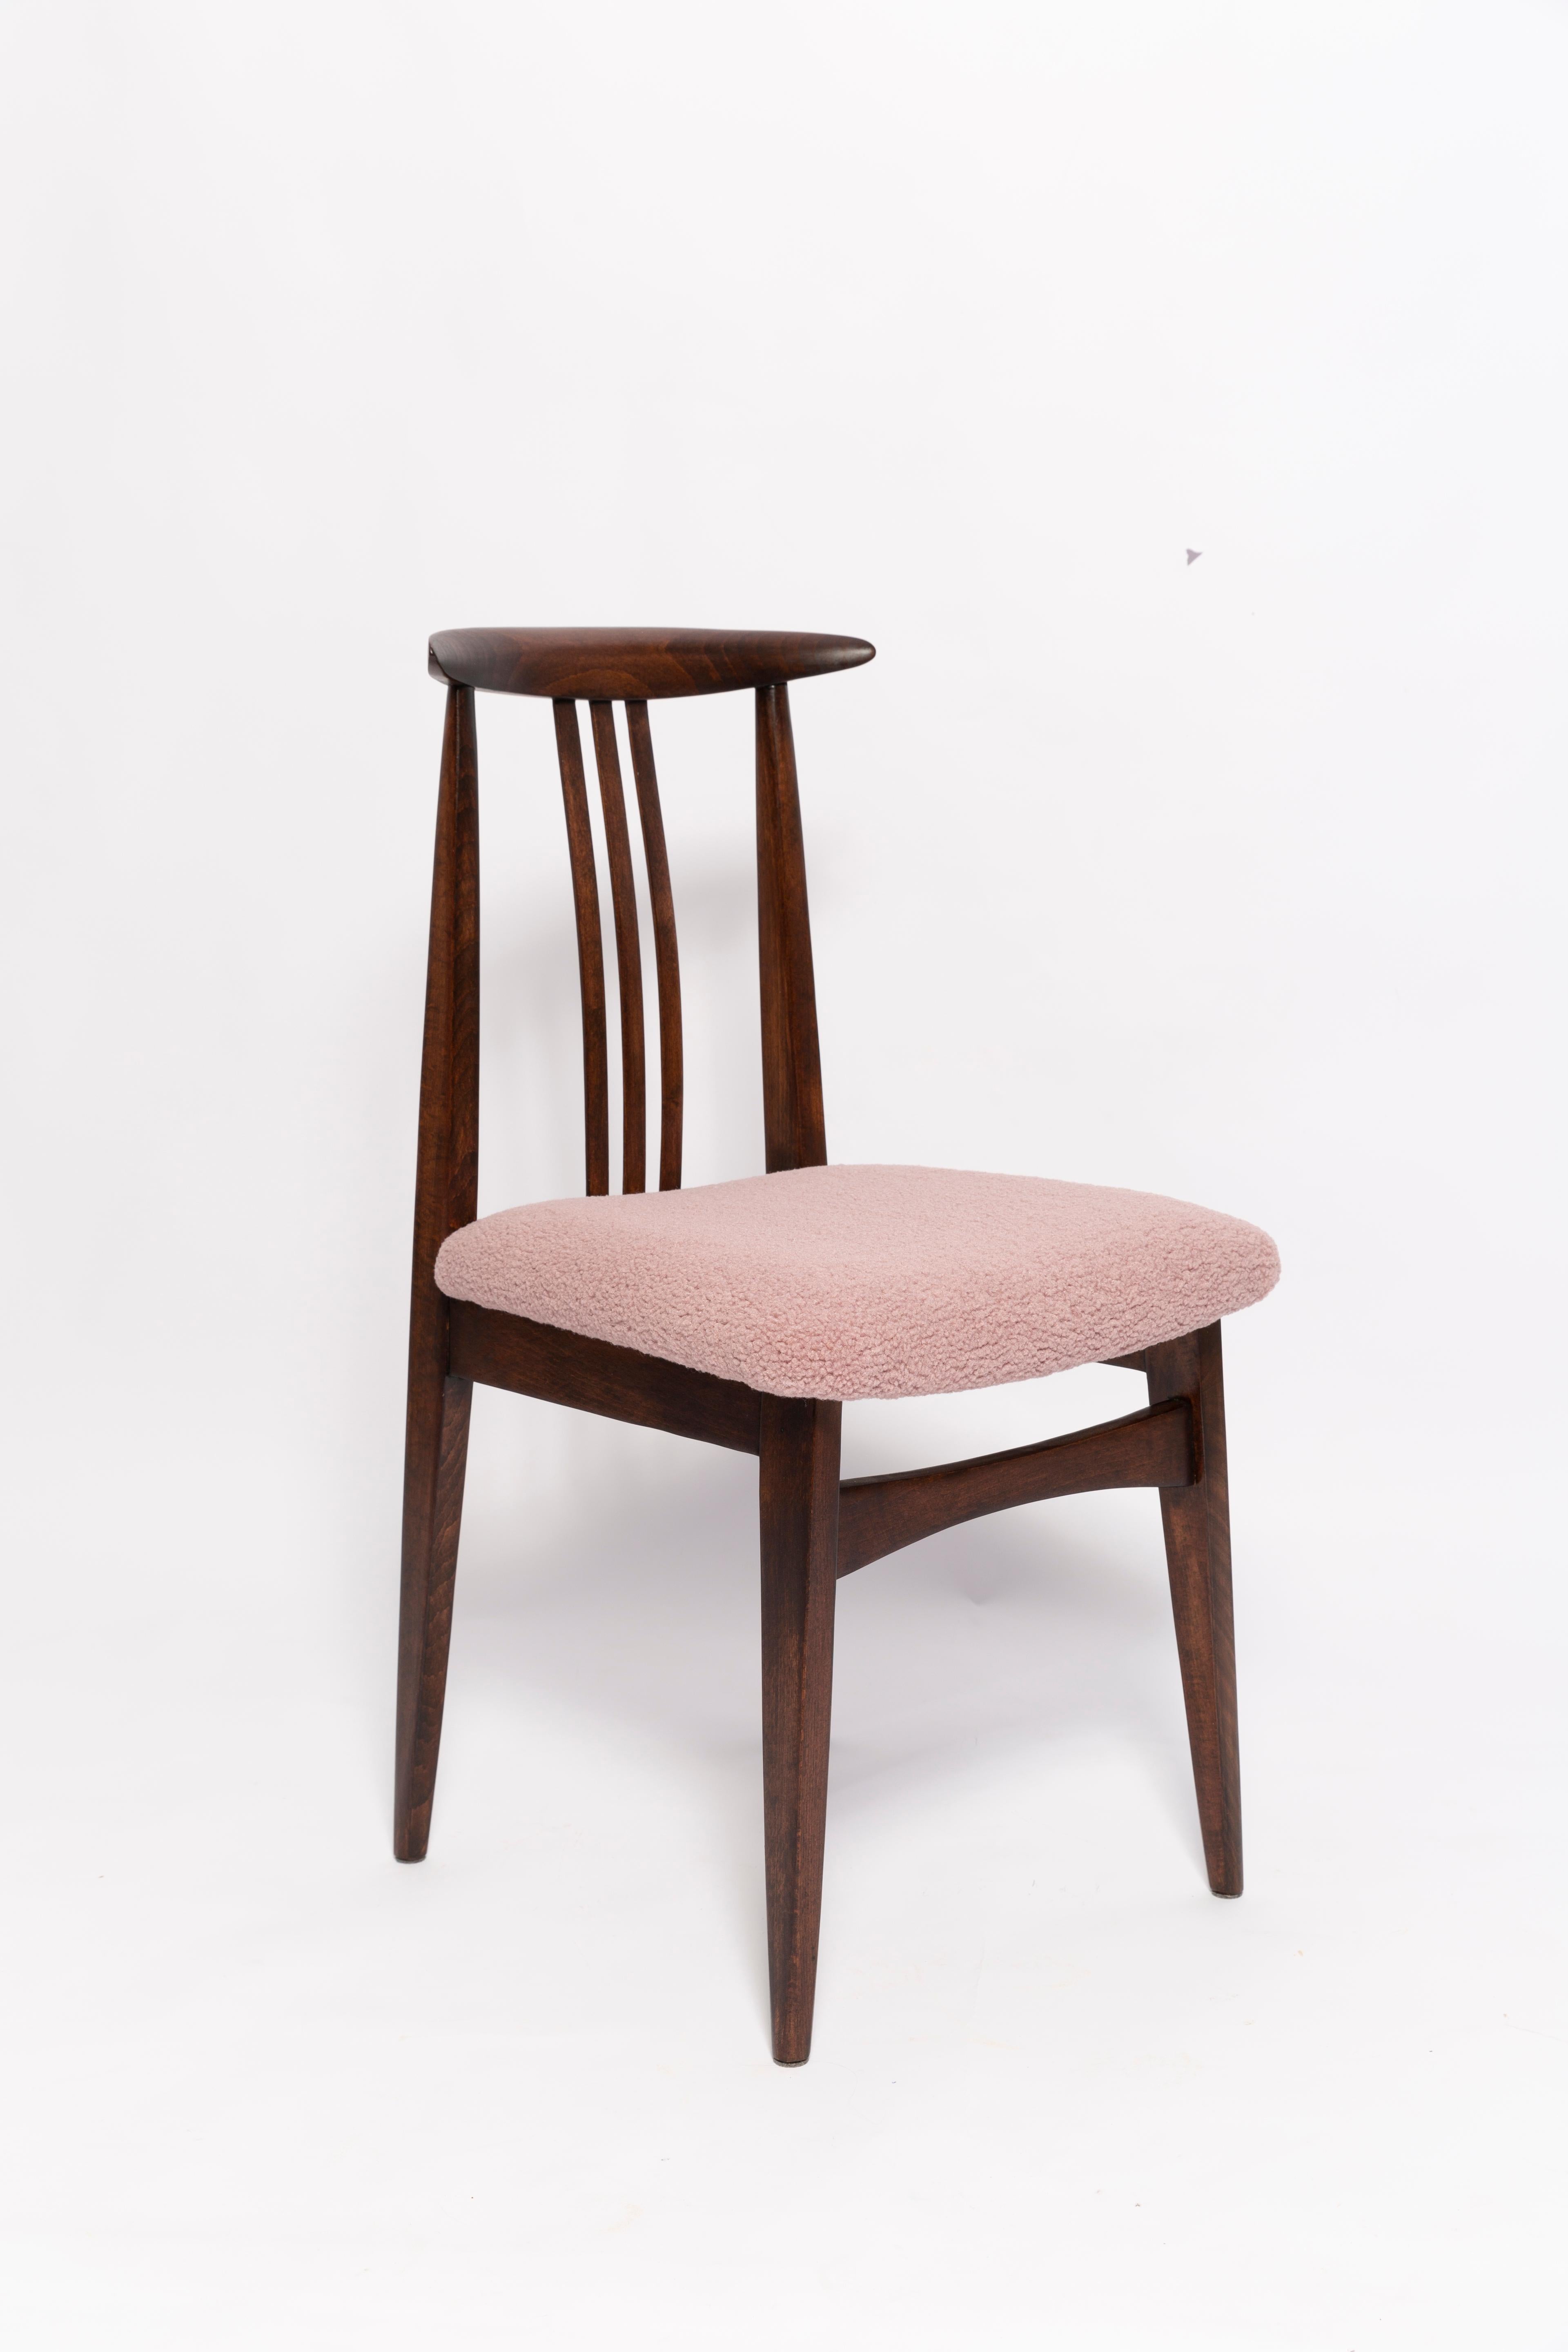 Une belle chaise en hêtre conçue par M. Beeche, type 200 / 100B. Fabriqué par le Centre industriel du meuble d'Opole à la fin des années 1960 en Pologne. La chaise a fait l'objet d'une rénovation complète de la menuiserie et de la tapisserie. Sièges